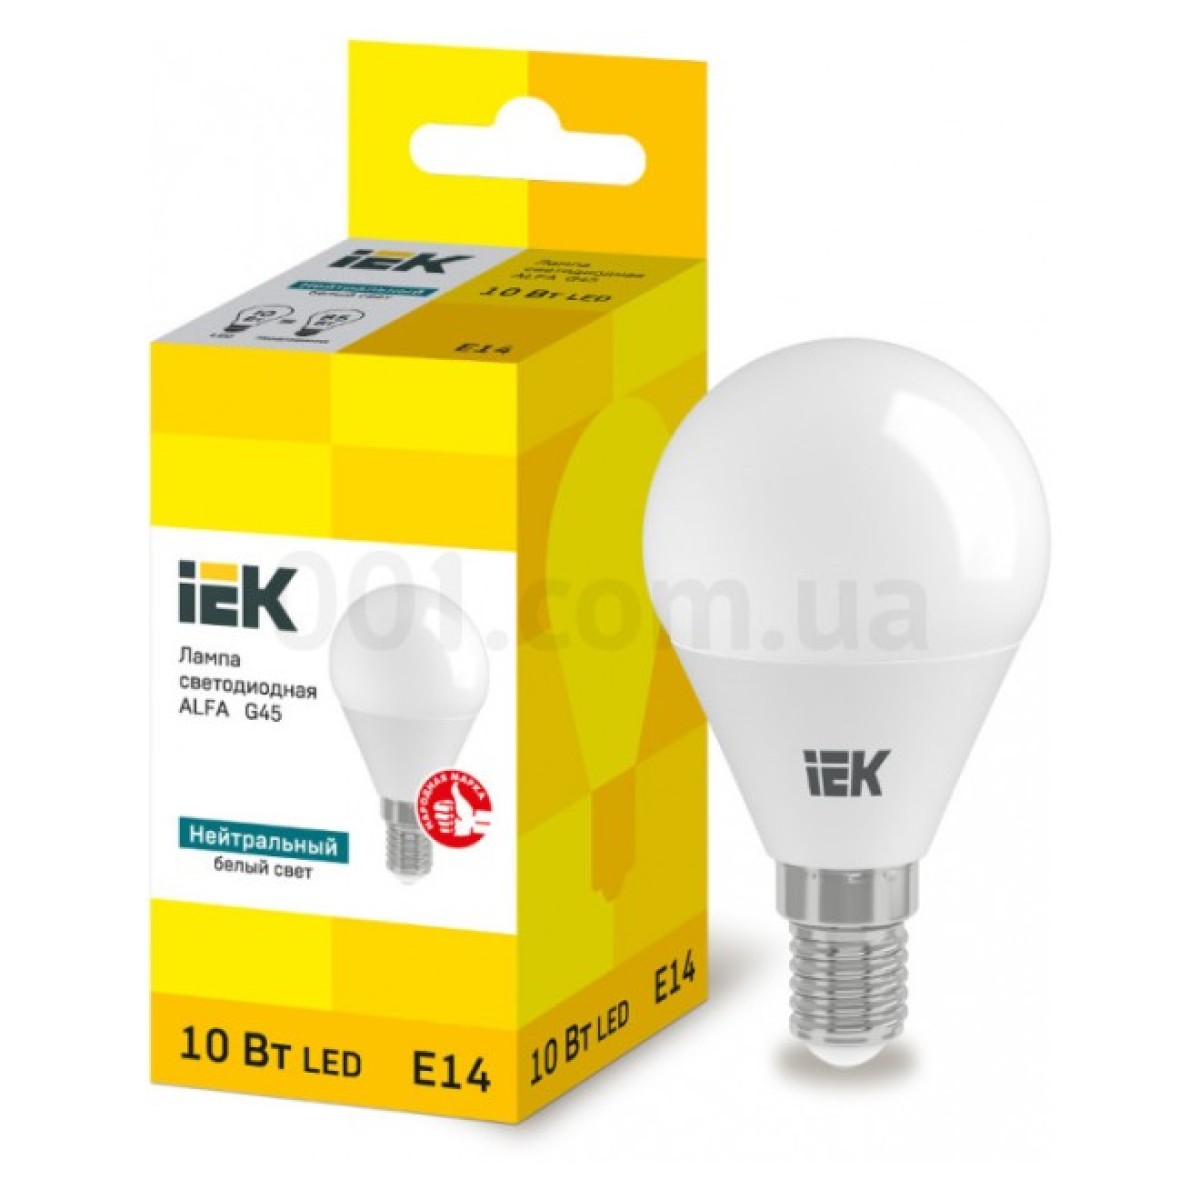 Світлодіодна лампа LED ALFA G45 (куля) 10 Вт 230В 4000К E14, IEK 256_256.jpg